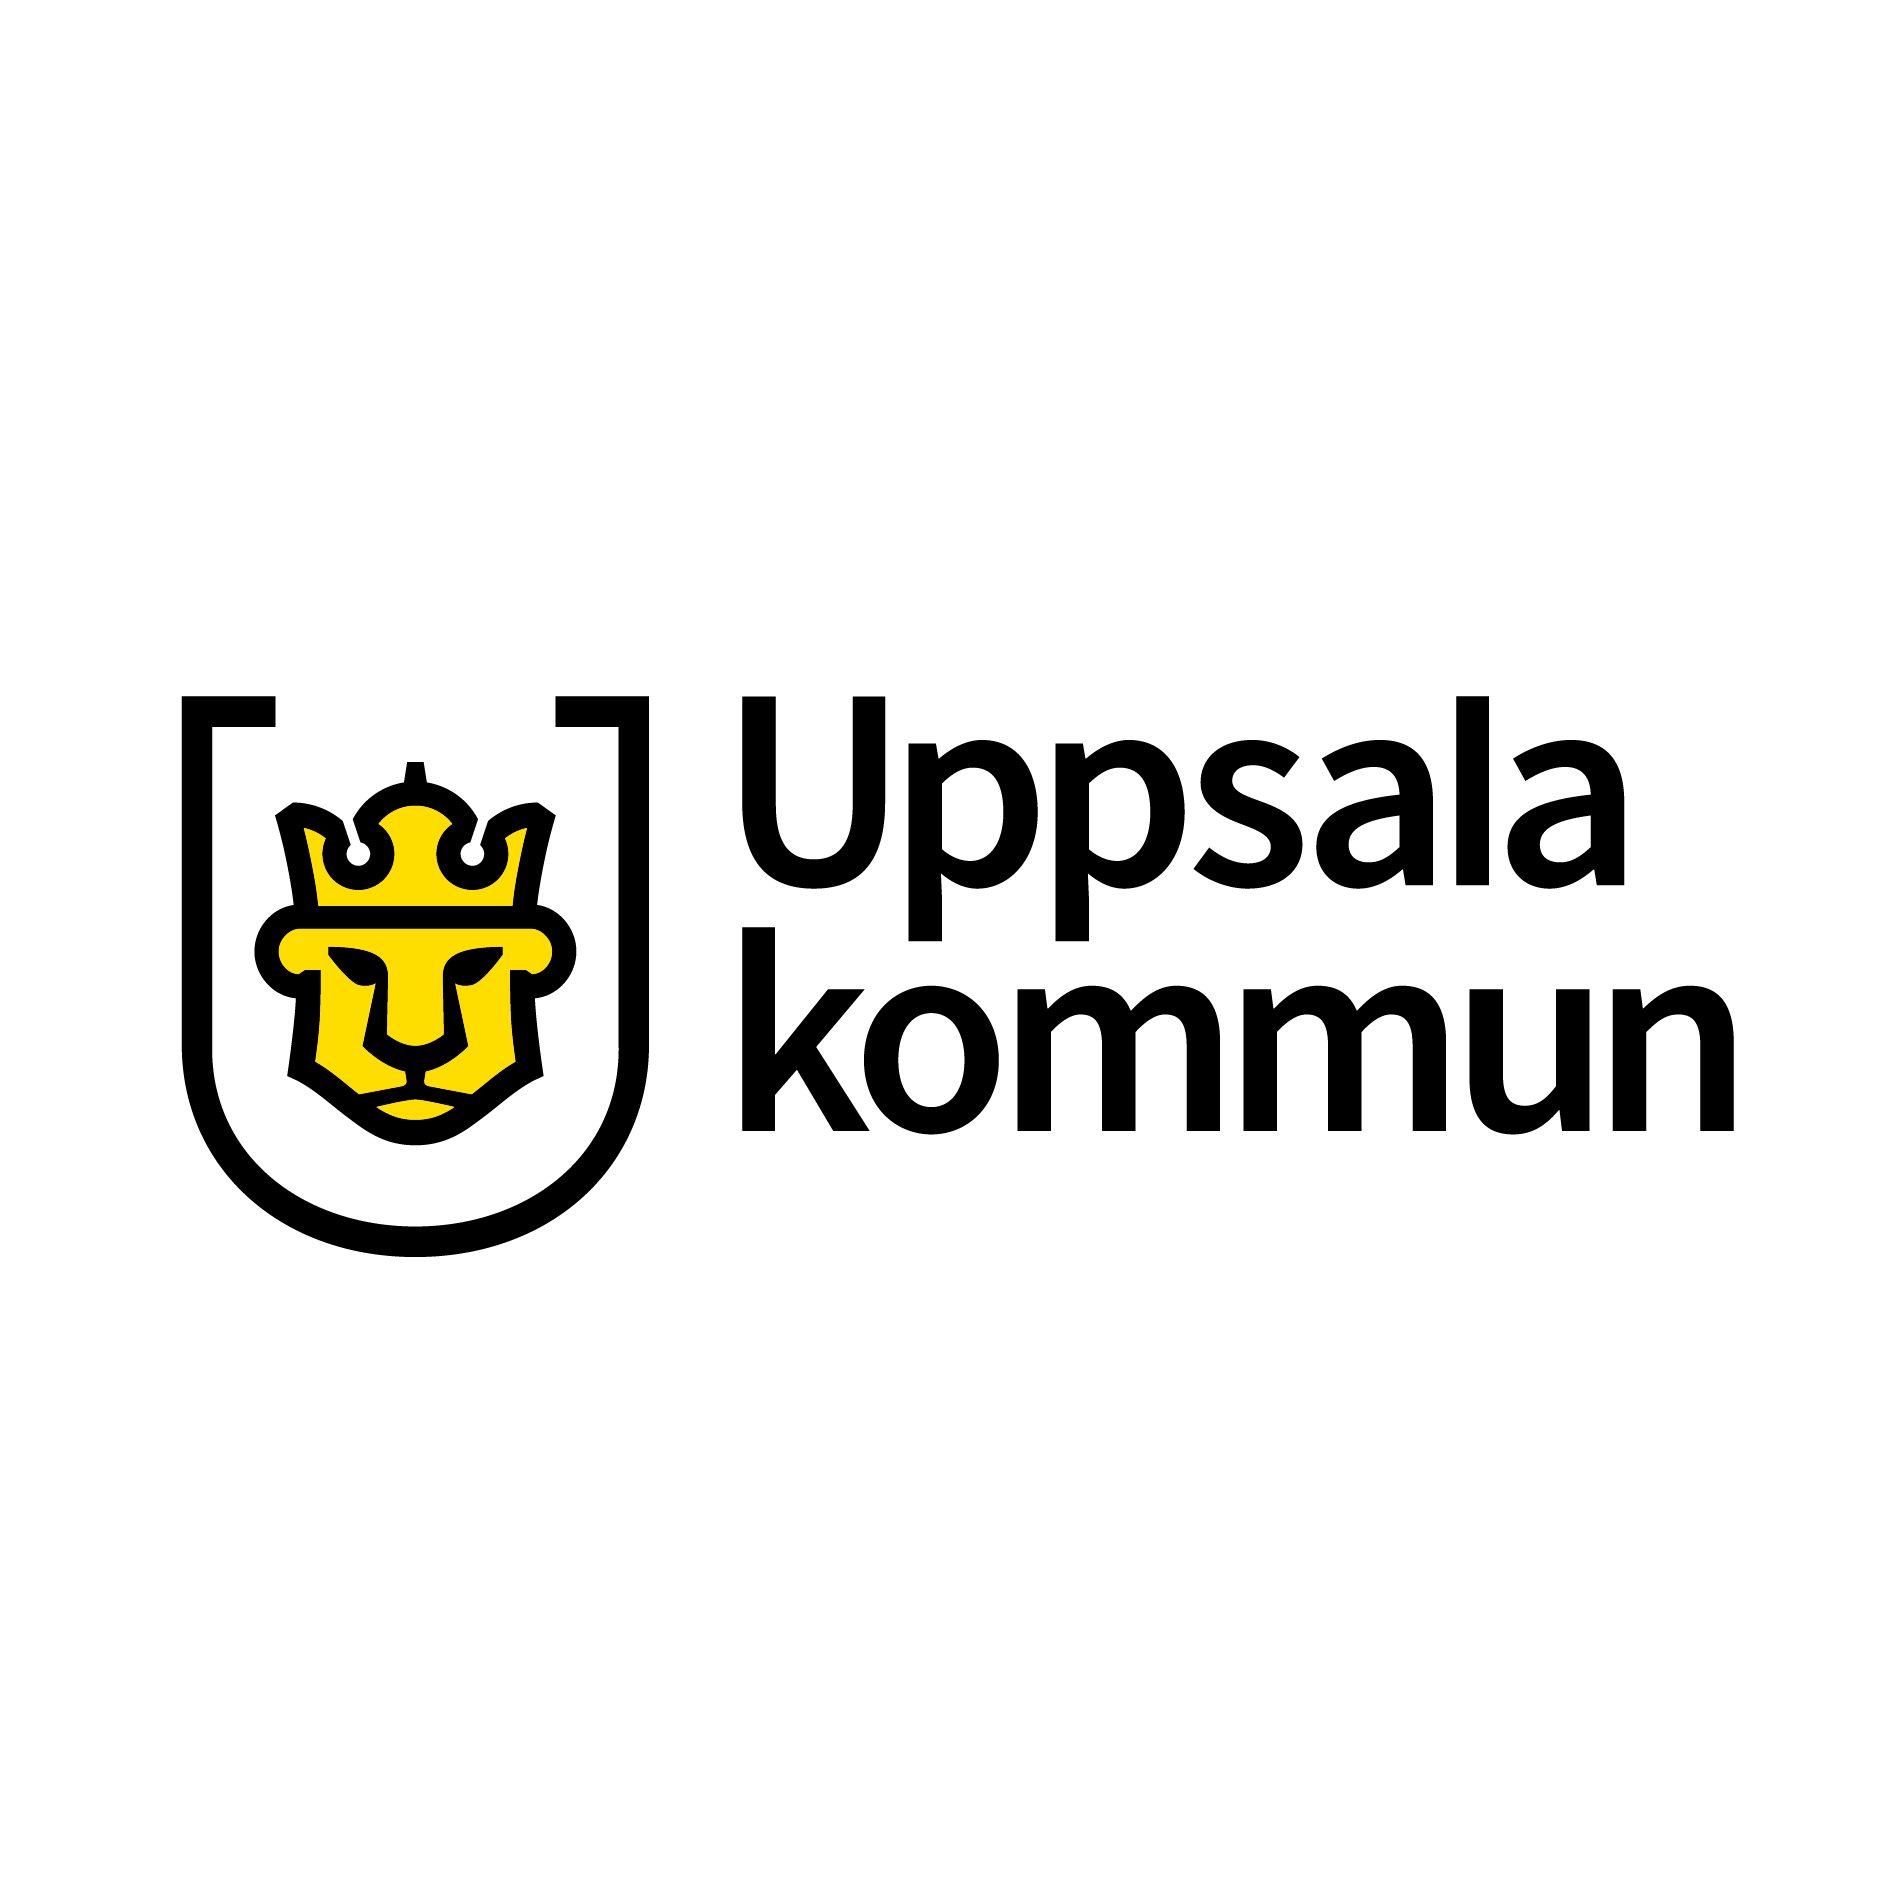 Uppsala kommun logo